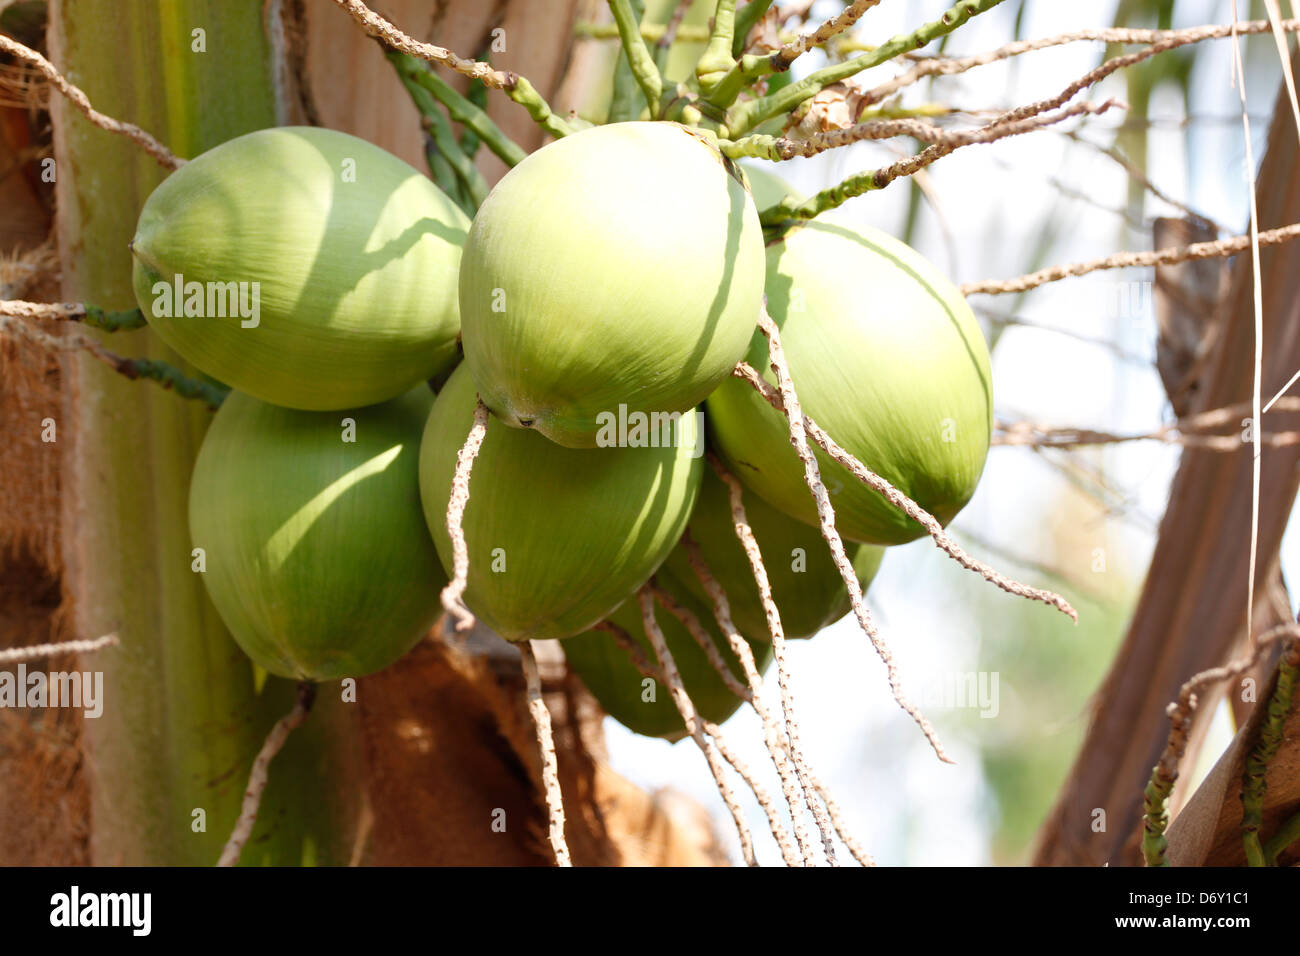 La noix de coco jeunes,il ont une couleur verte. Banque D'Images